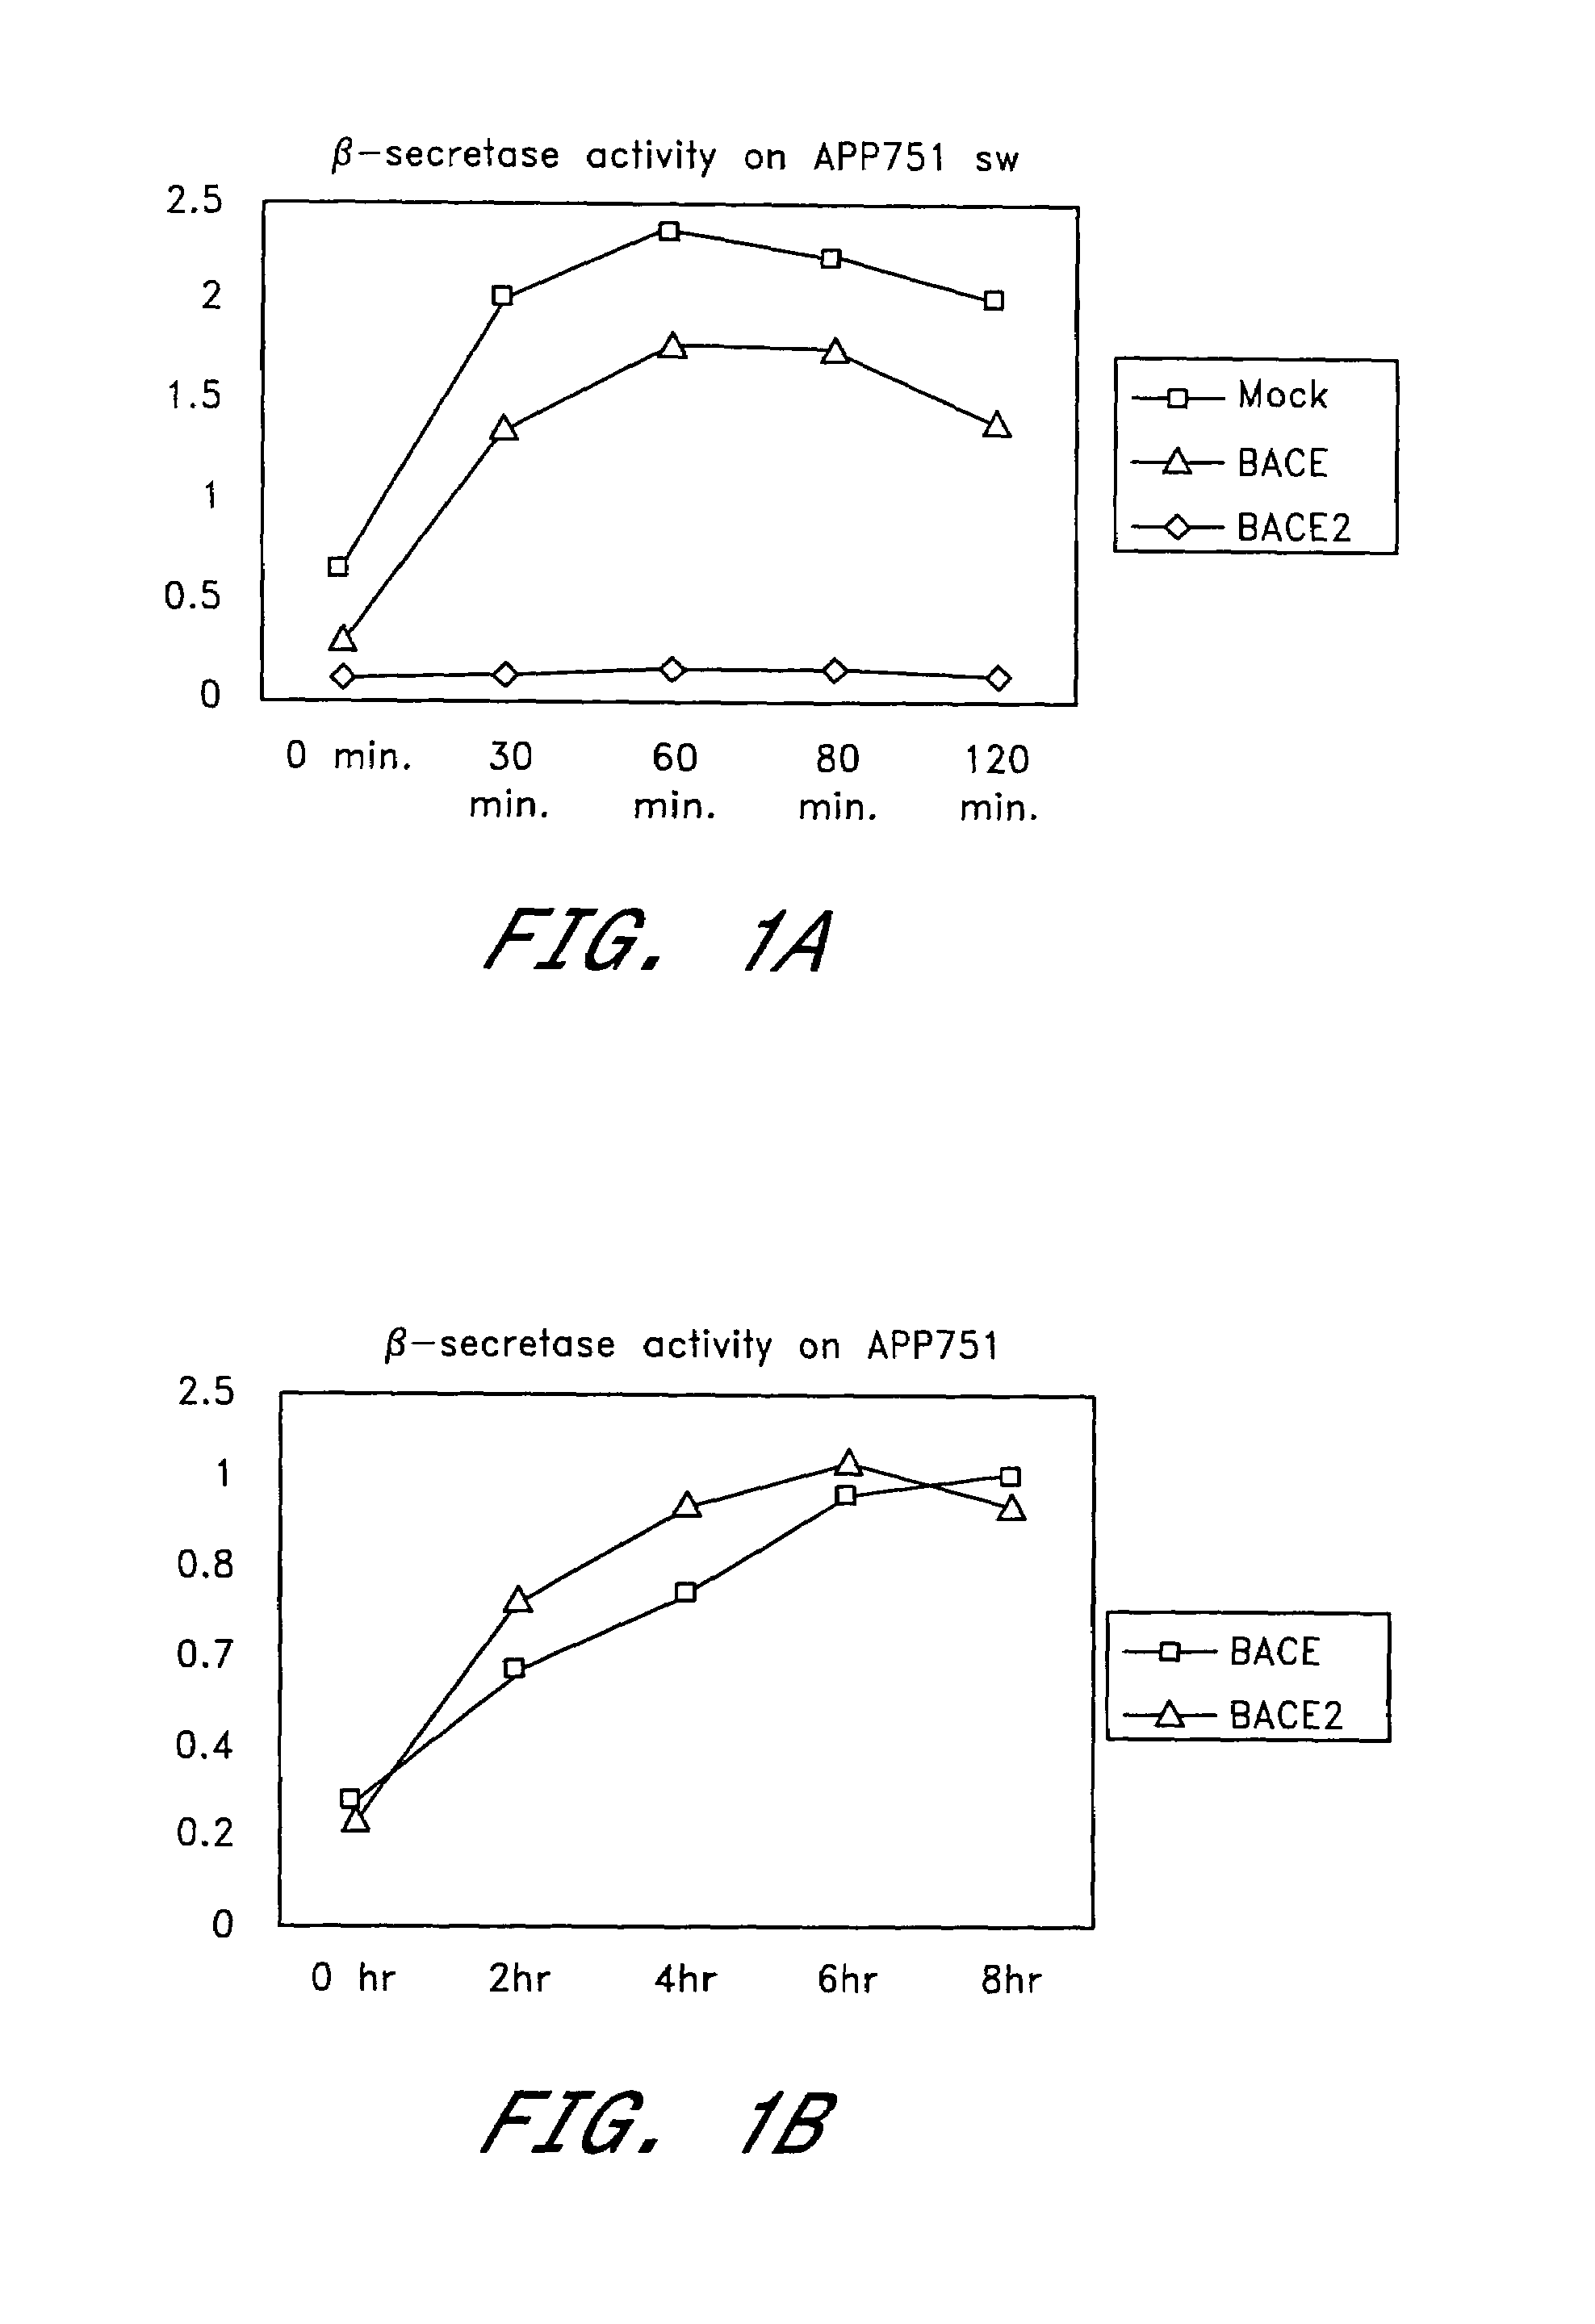 Inhibition of Abeta production by beta-secretase BACE2